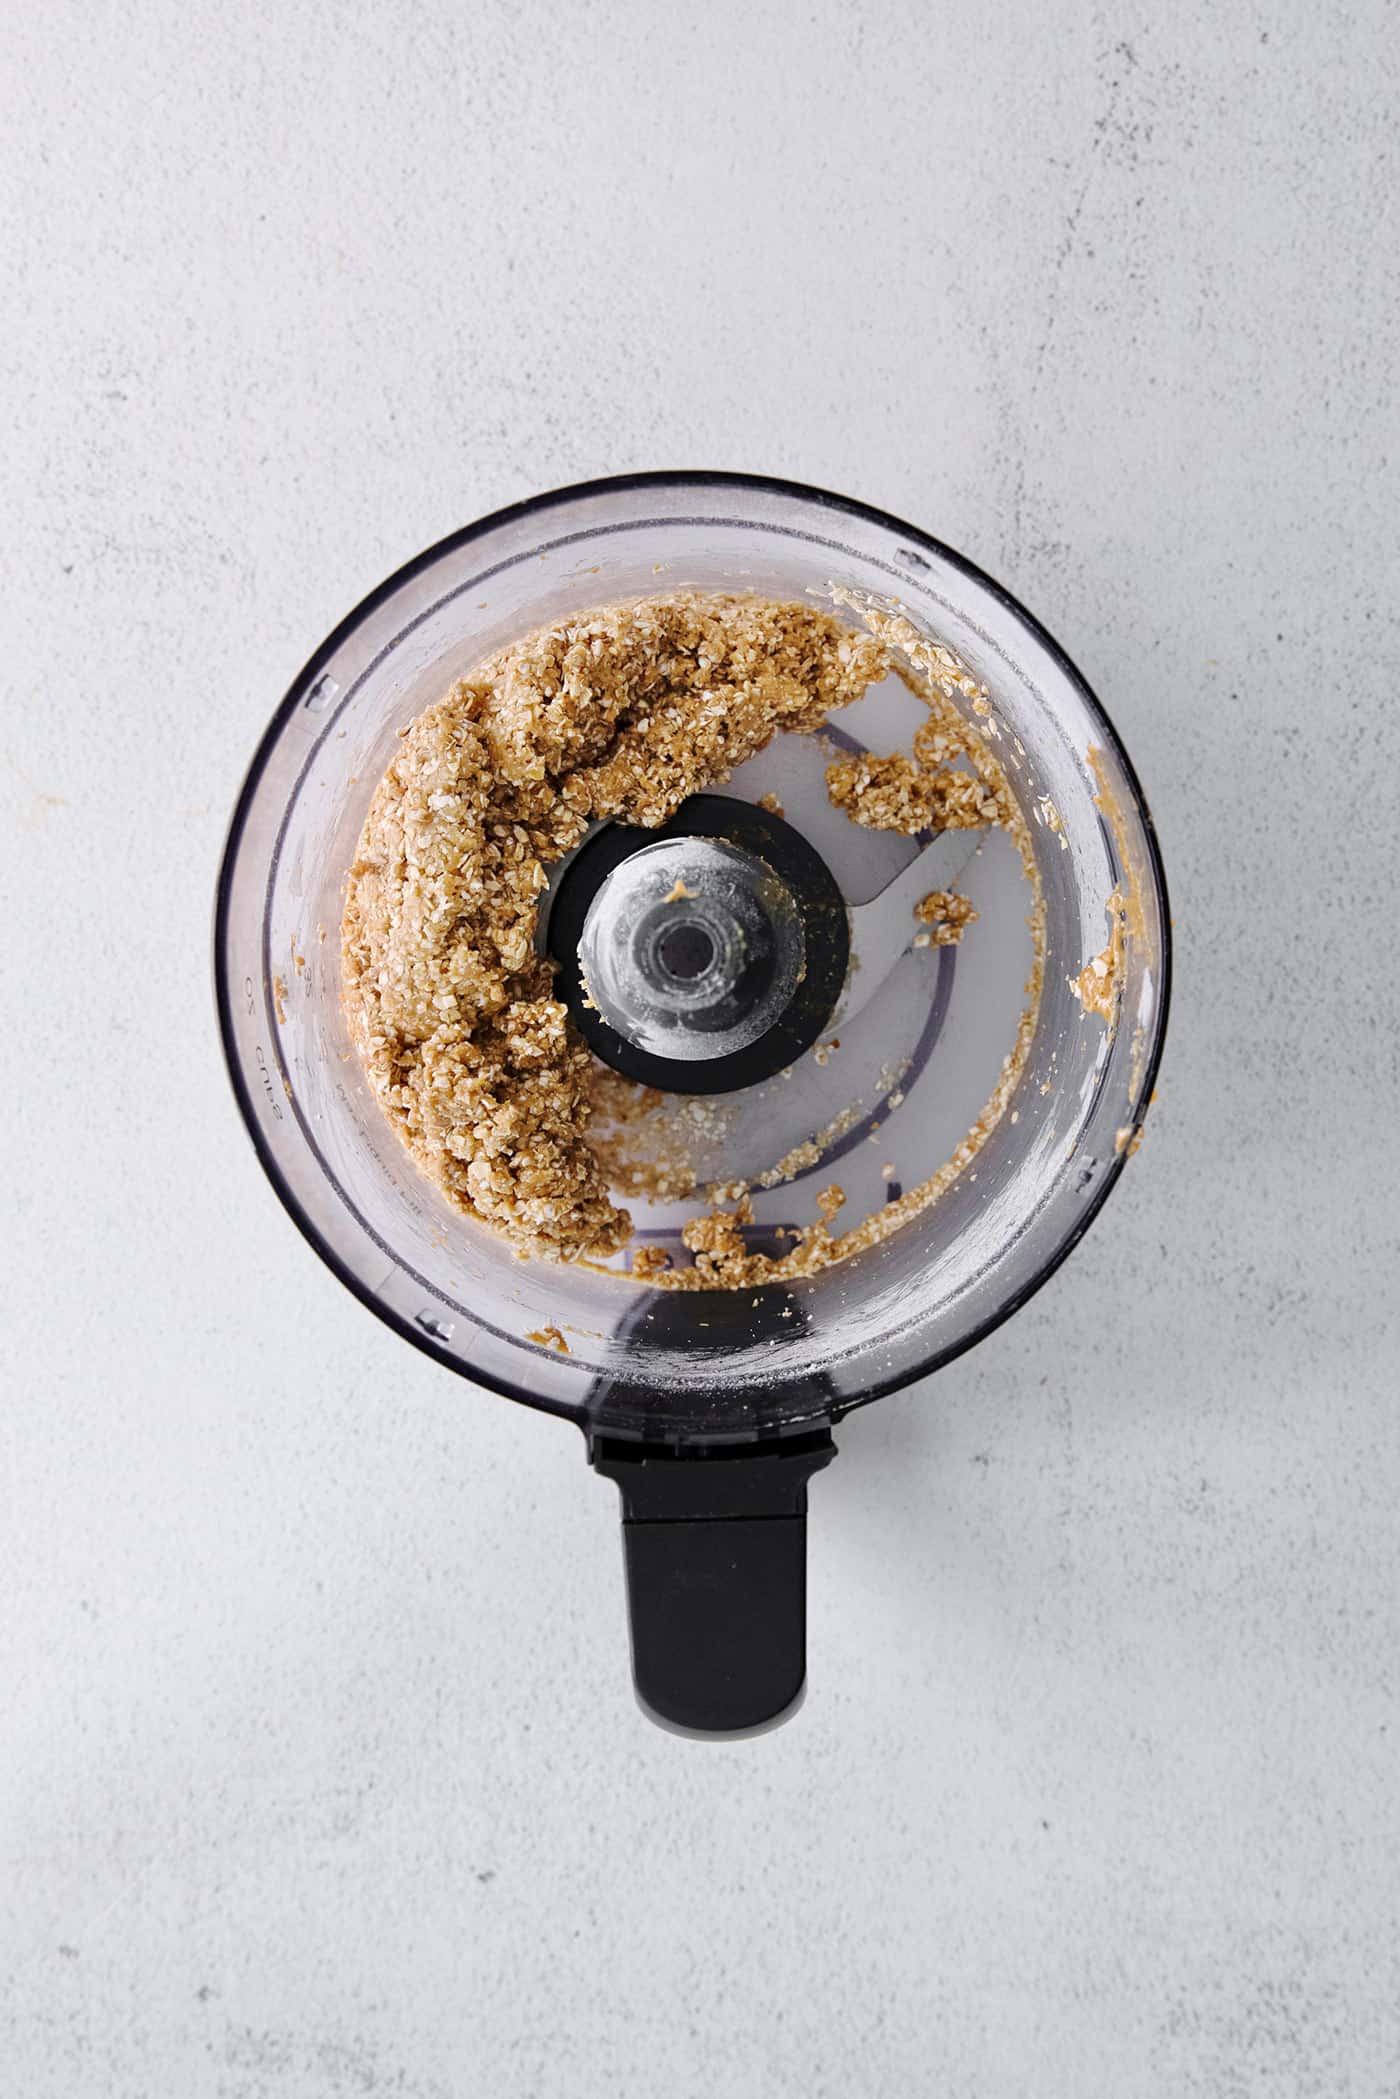 Peanut butter oat bite dough in a food processor